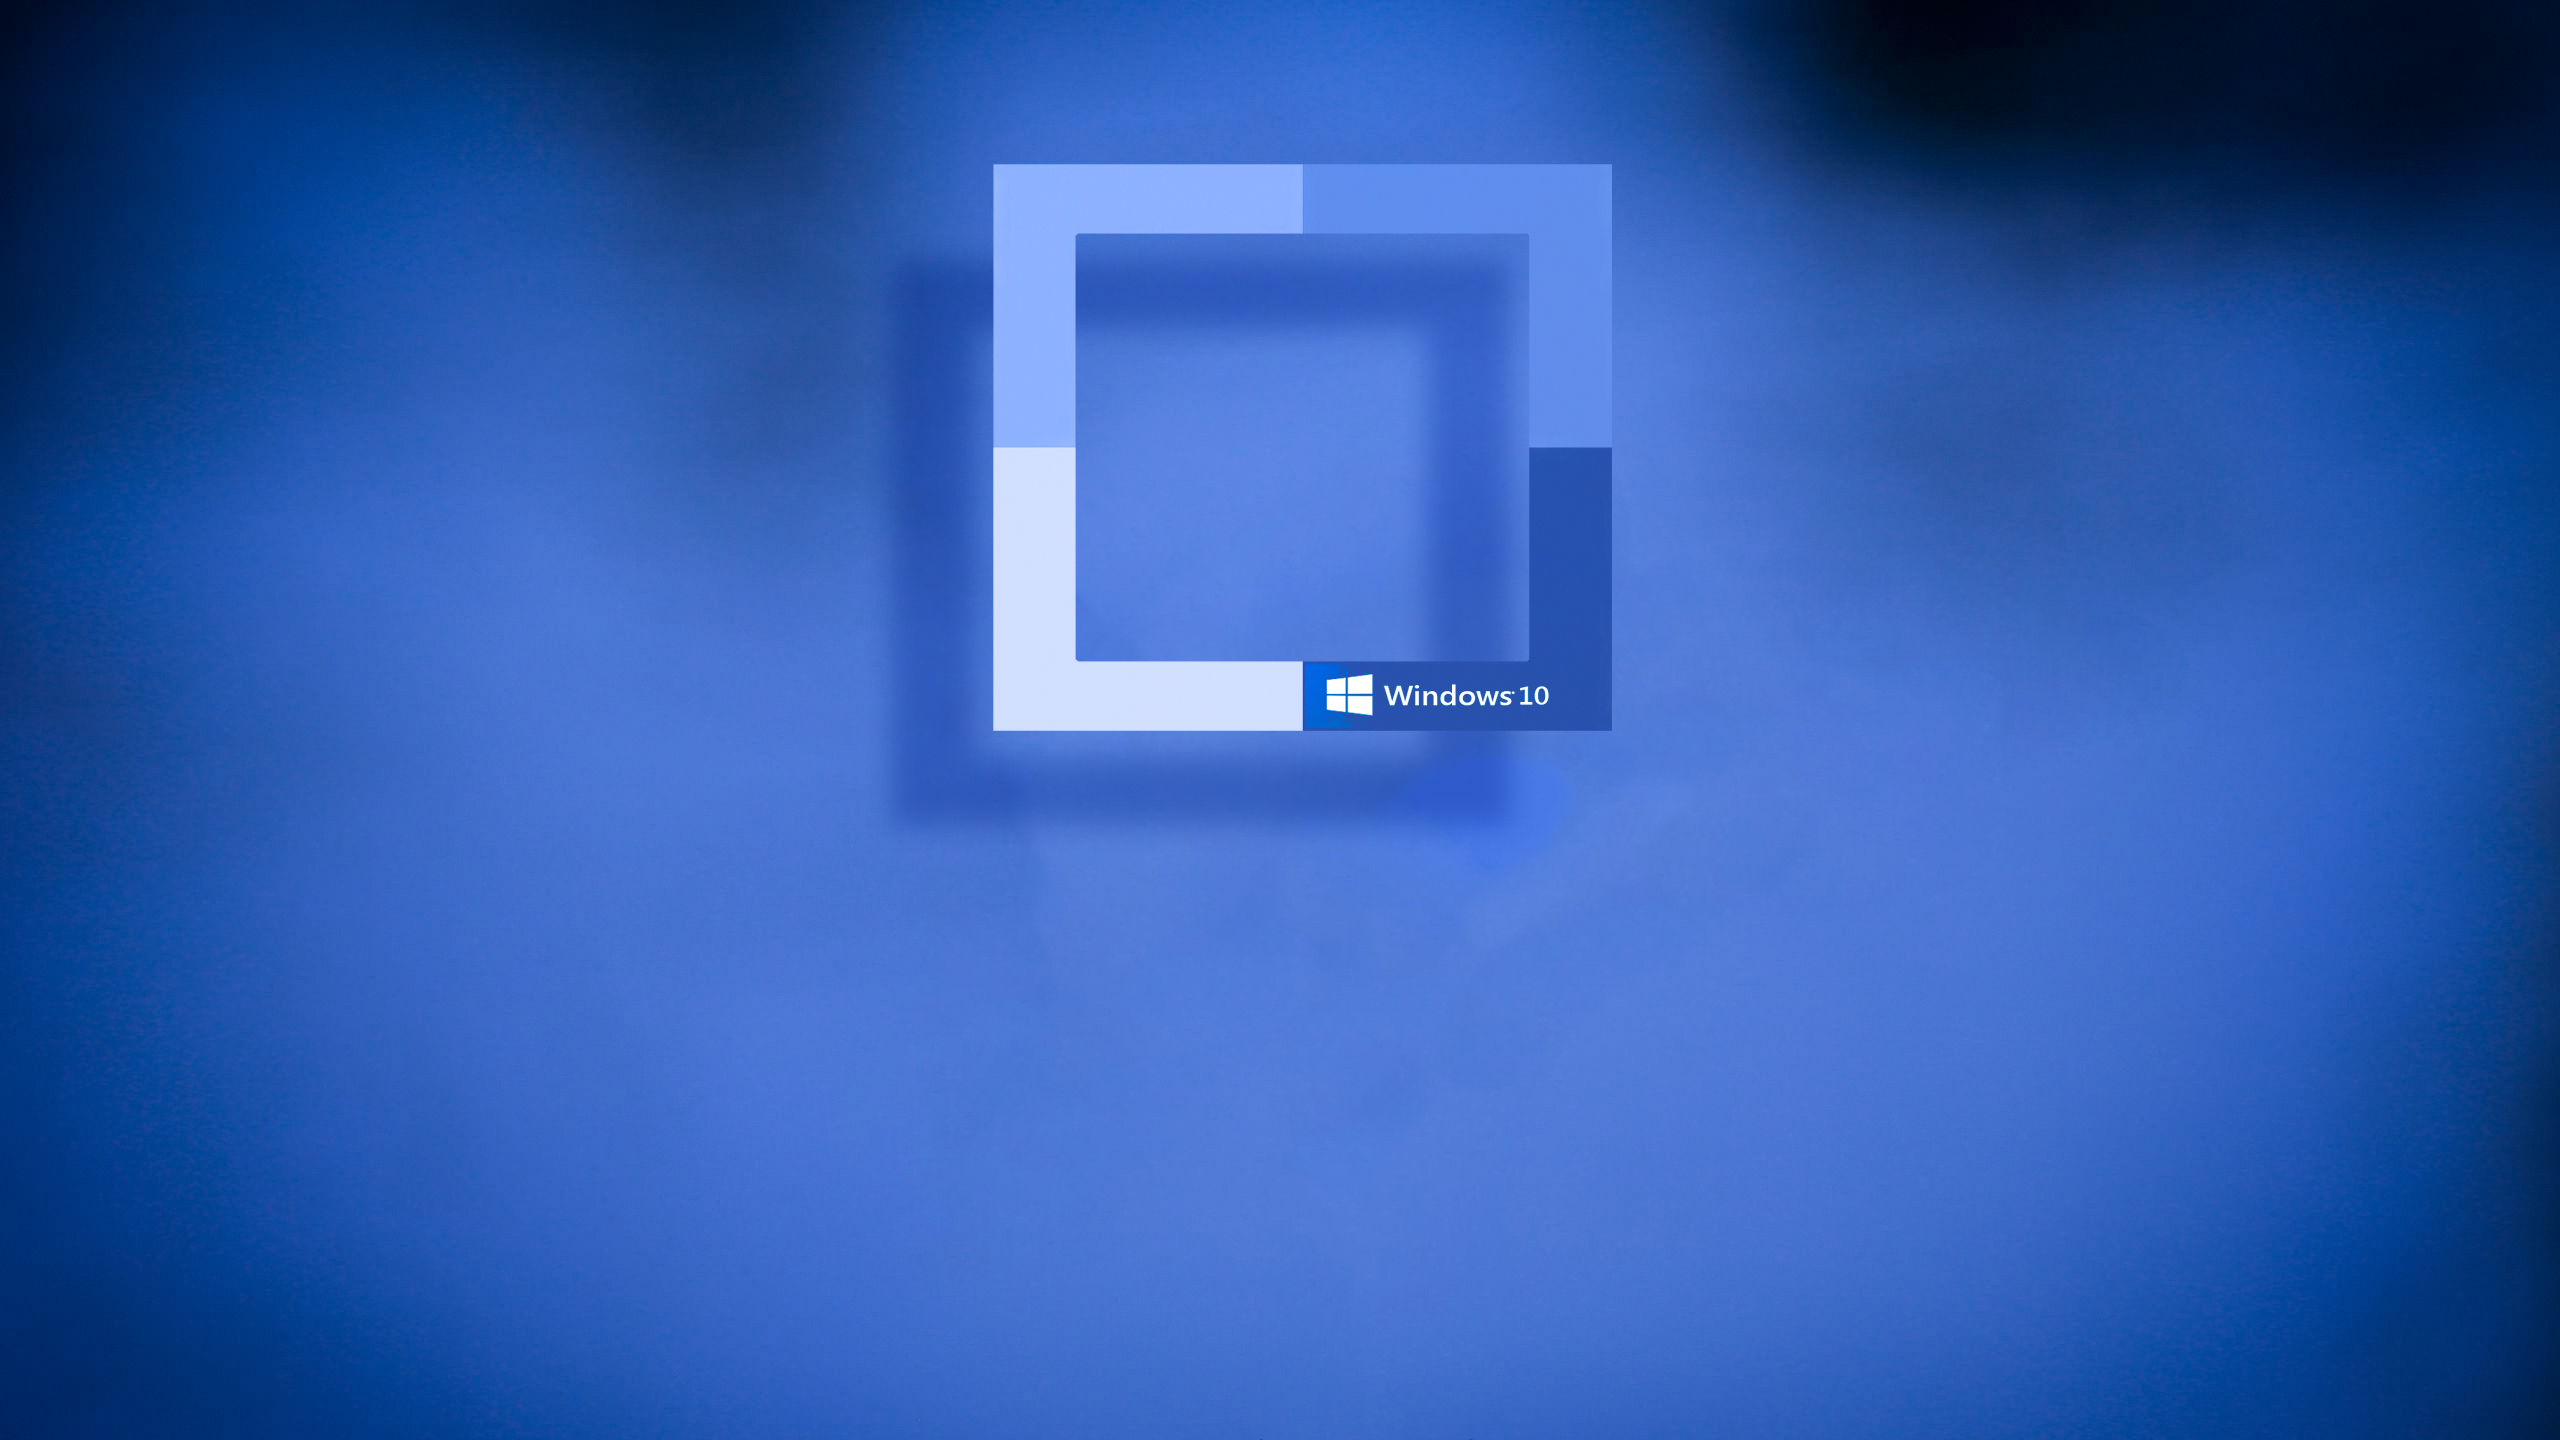 Bạn muốn có một trang trí máy tính độc đáo và đẹp mắt? Hãy tải ngay miễn phí bộ sưu tập hình nền Windows 10 Desktop Backgrounds 5 HD để tận hưởng những hình ảnh độc đáo và đầy sáng tạo. Bạn sẽ chắc chắn tìm được một hình ảnh yêu thích để trang trí máy tính của mình!